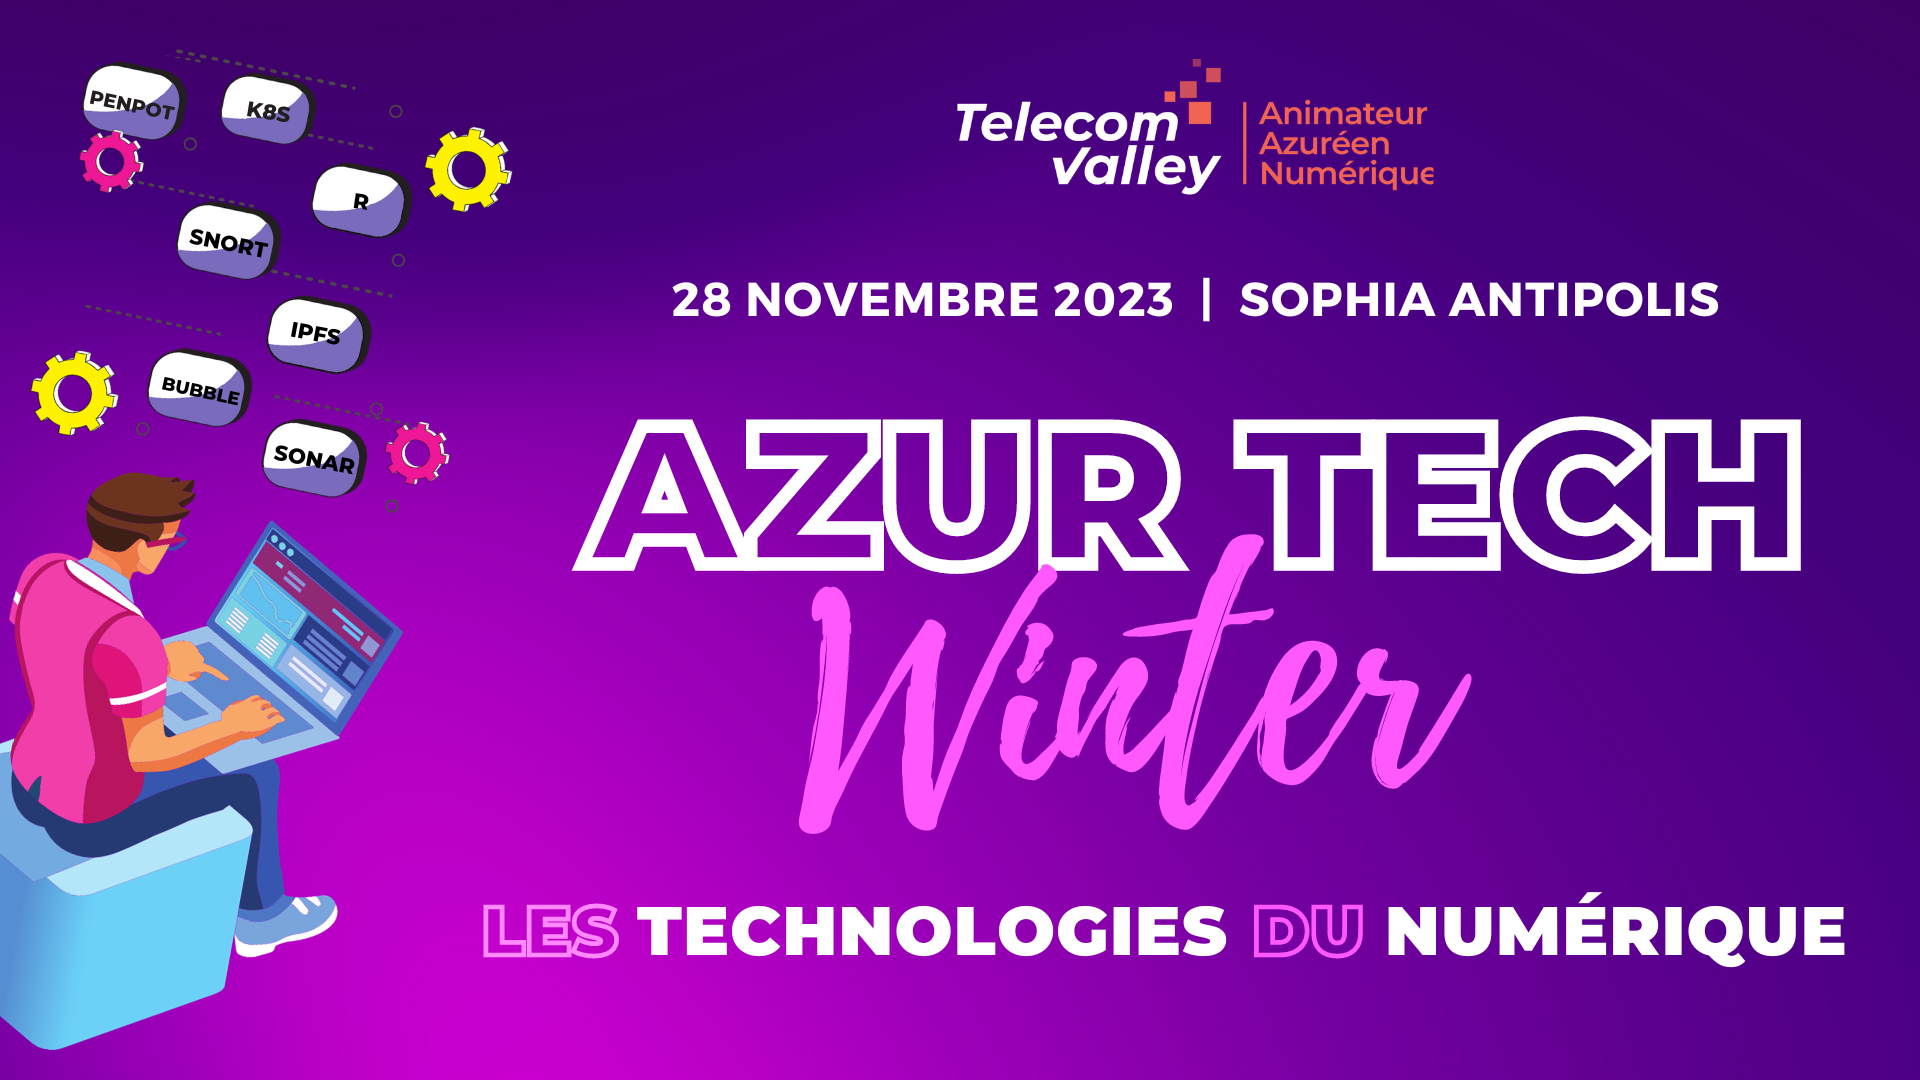 Azur Tech Winter 2023